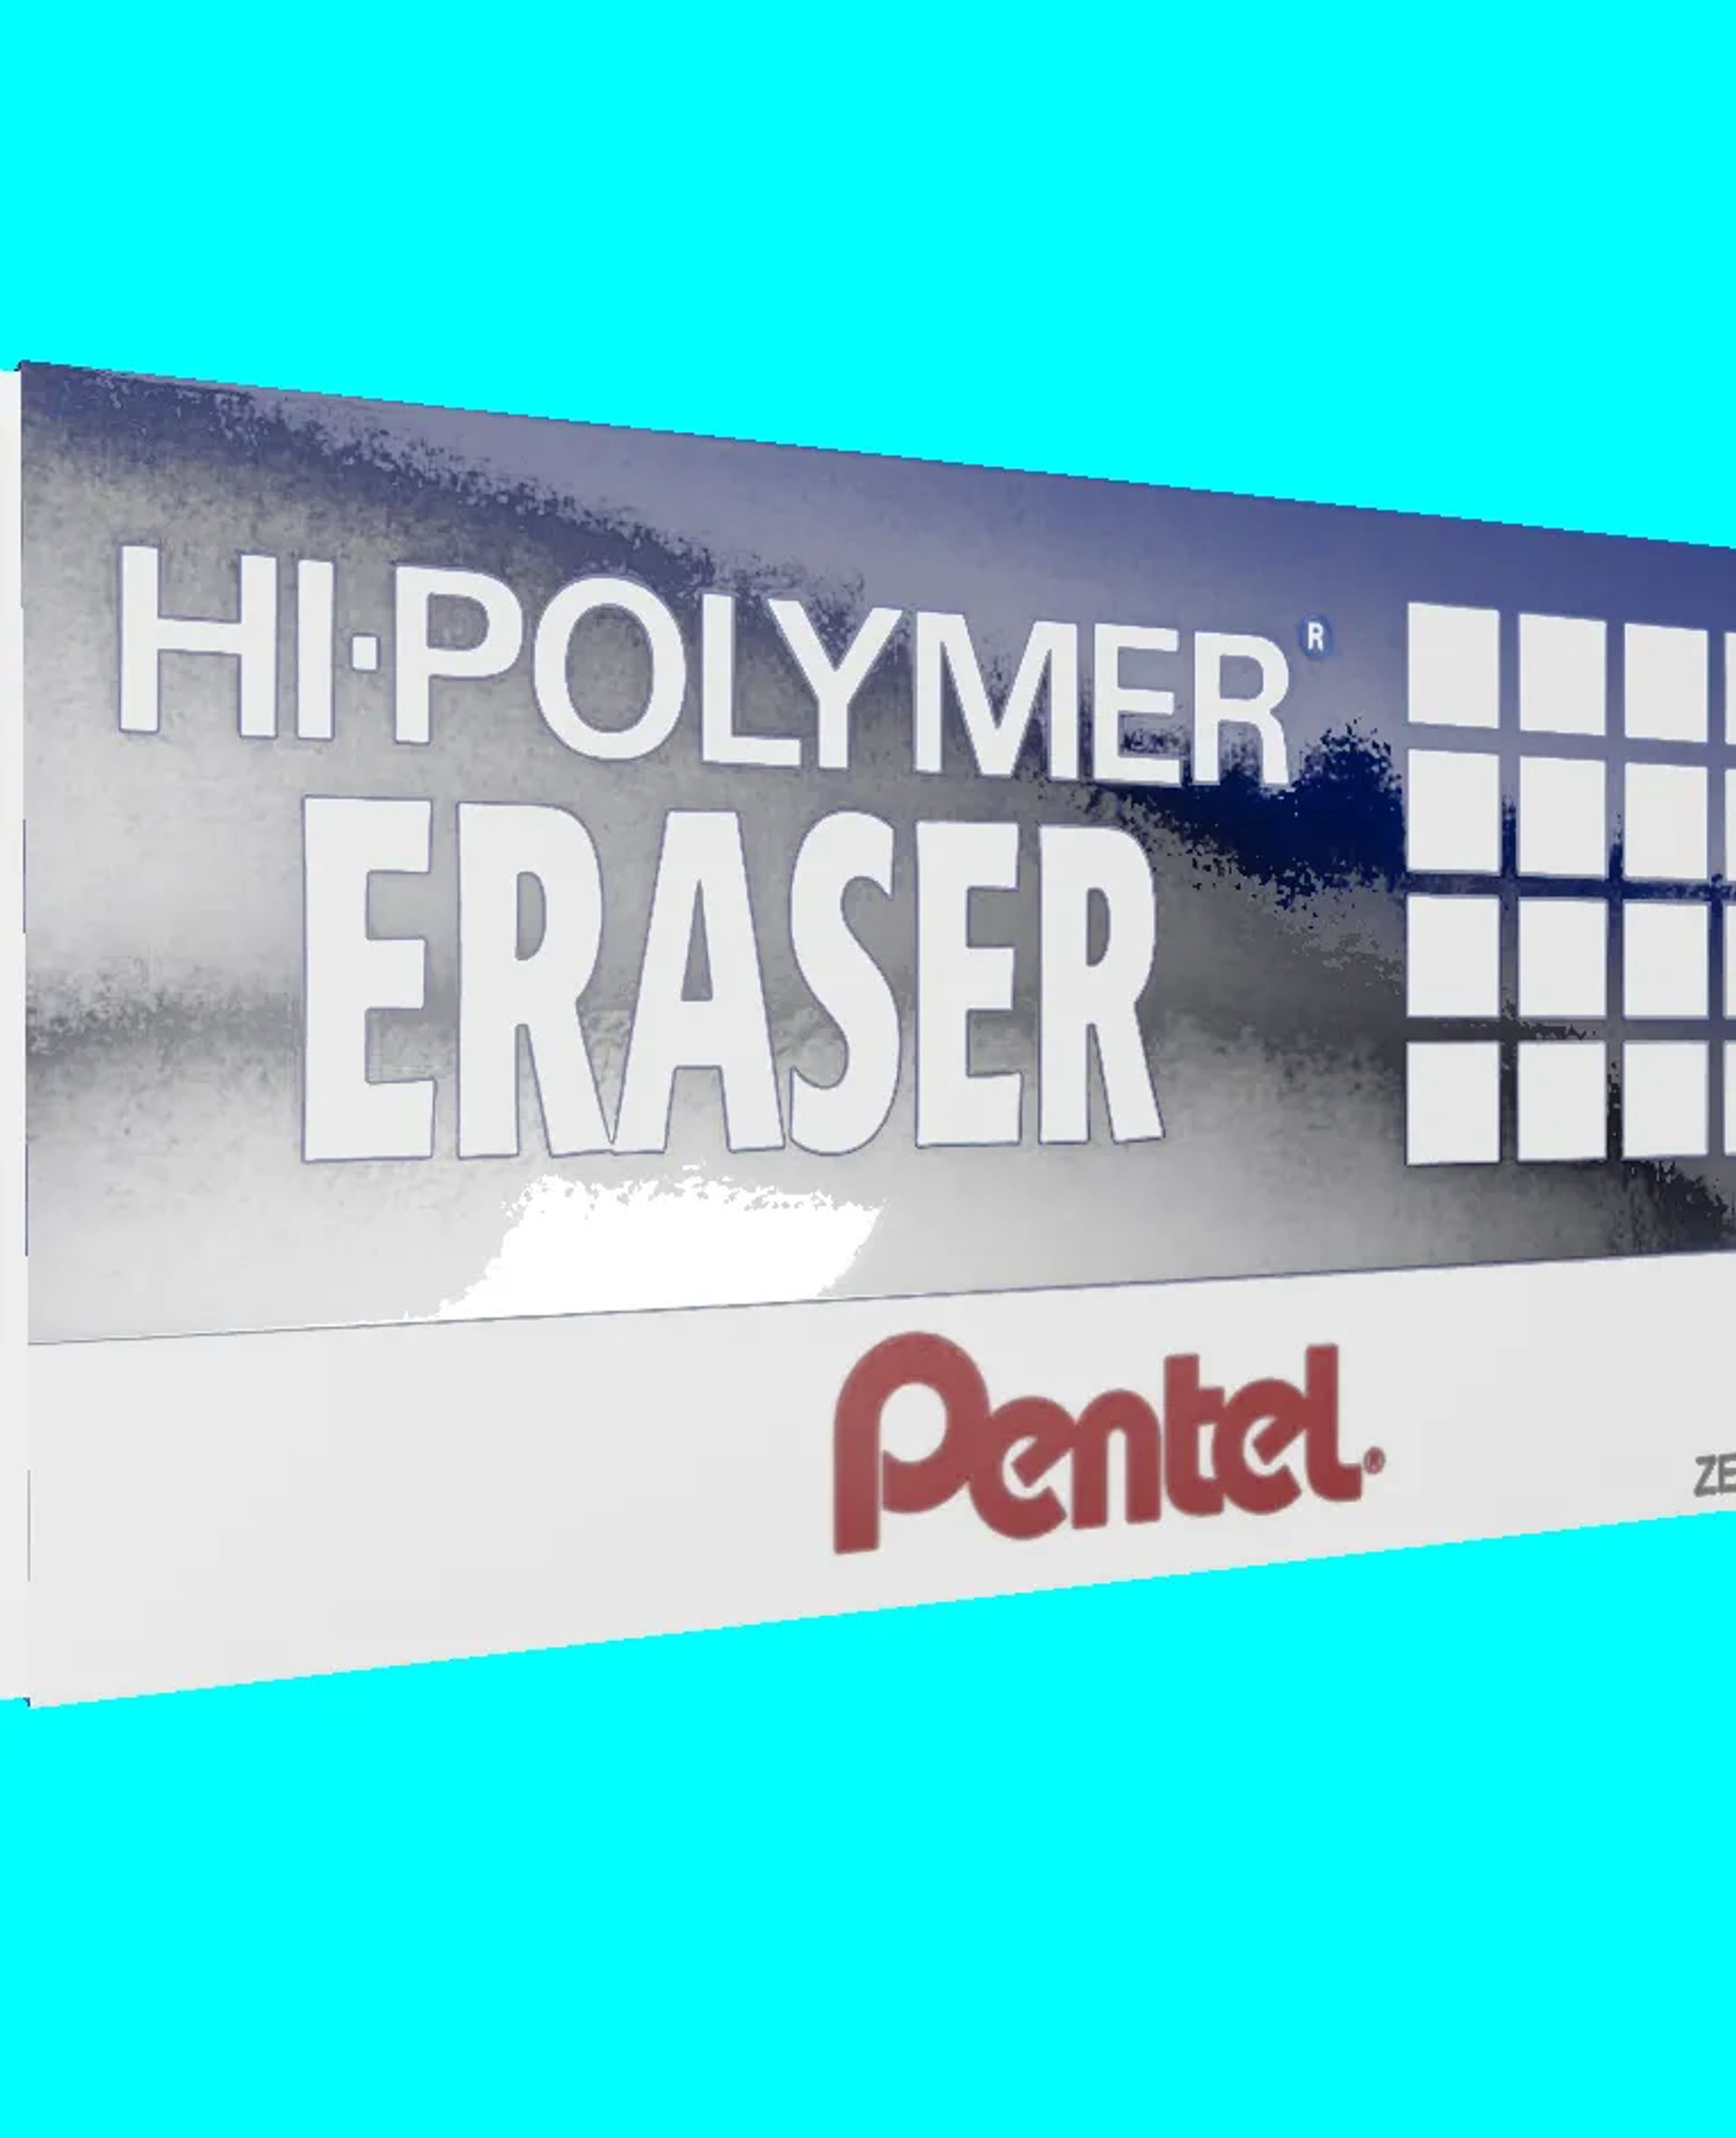 hi polymer eraser